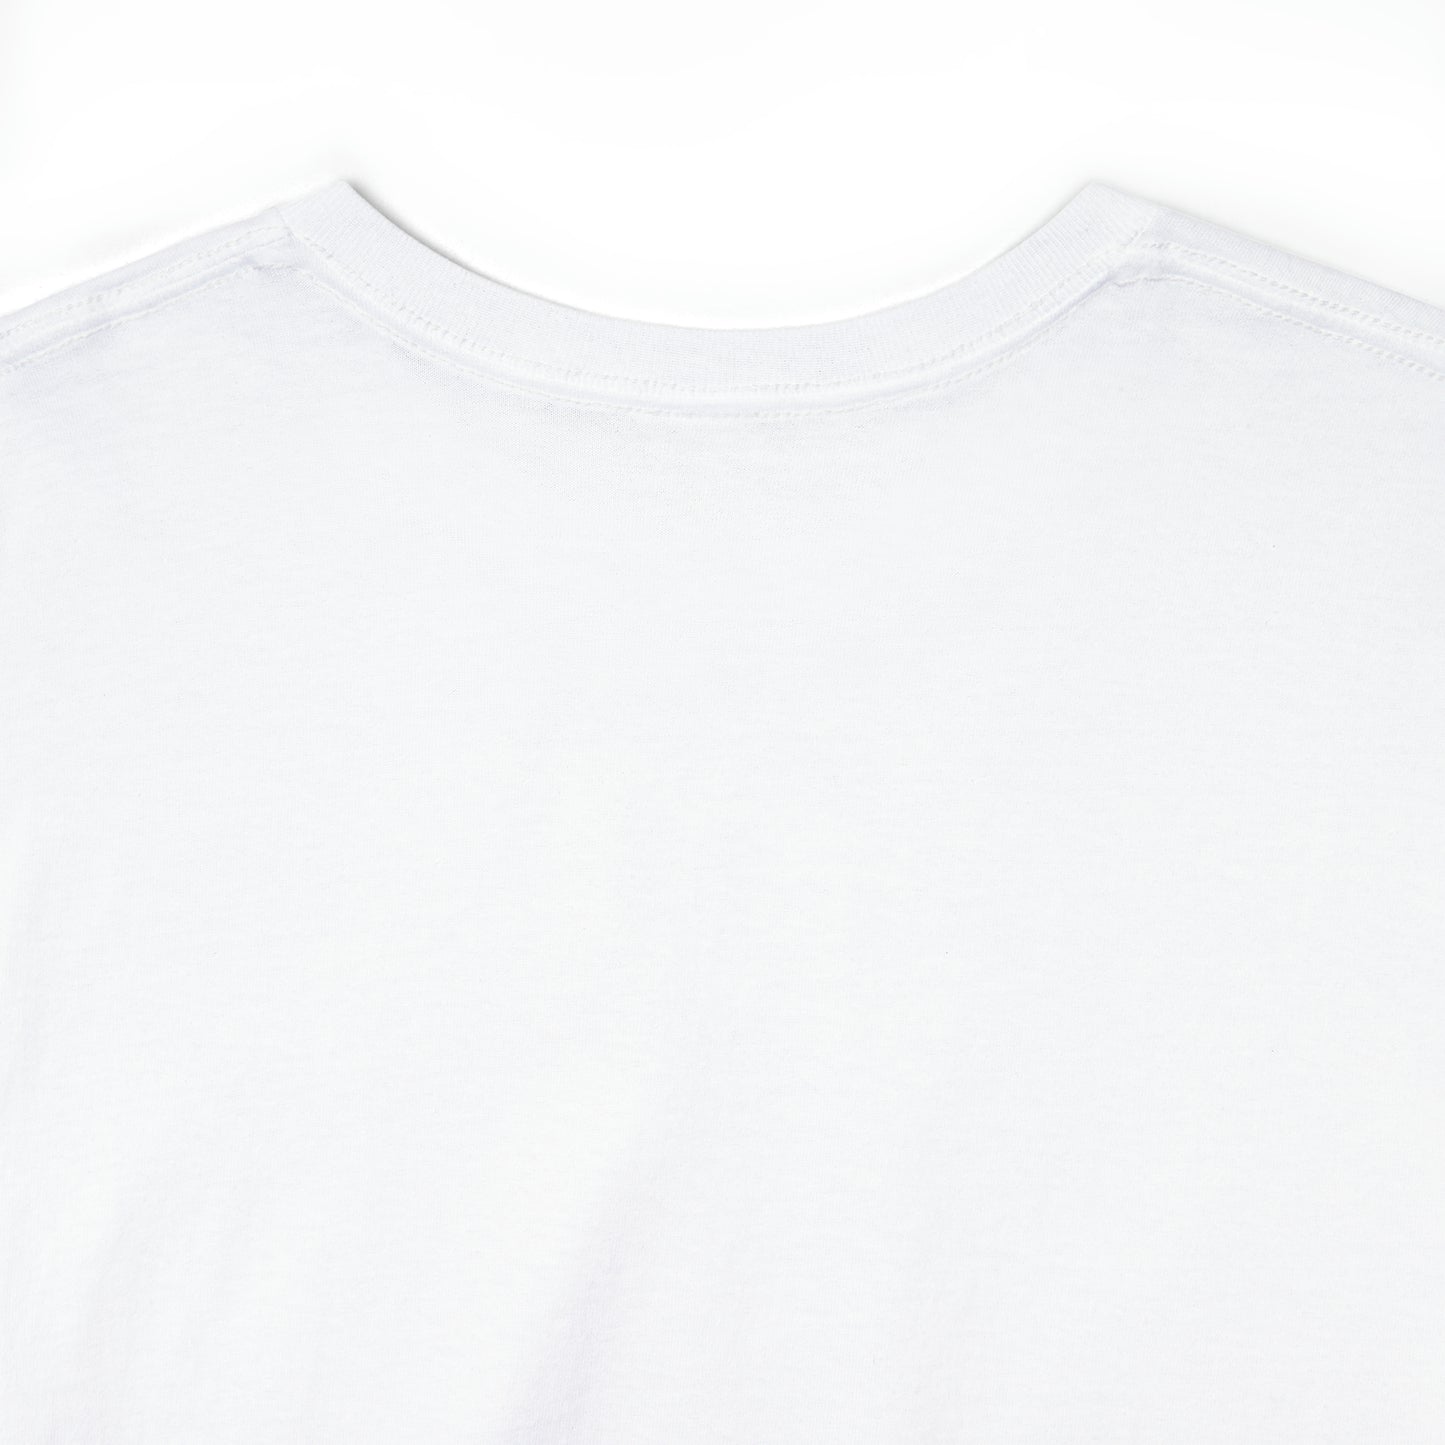 Summer T-shirt | Women's Summer T-shirt, Short Sleeve T-shirt, Beach T-shirt, Beach Lover Gift, Women's Summer Tee, Whale T-shirt